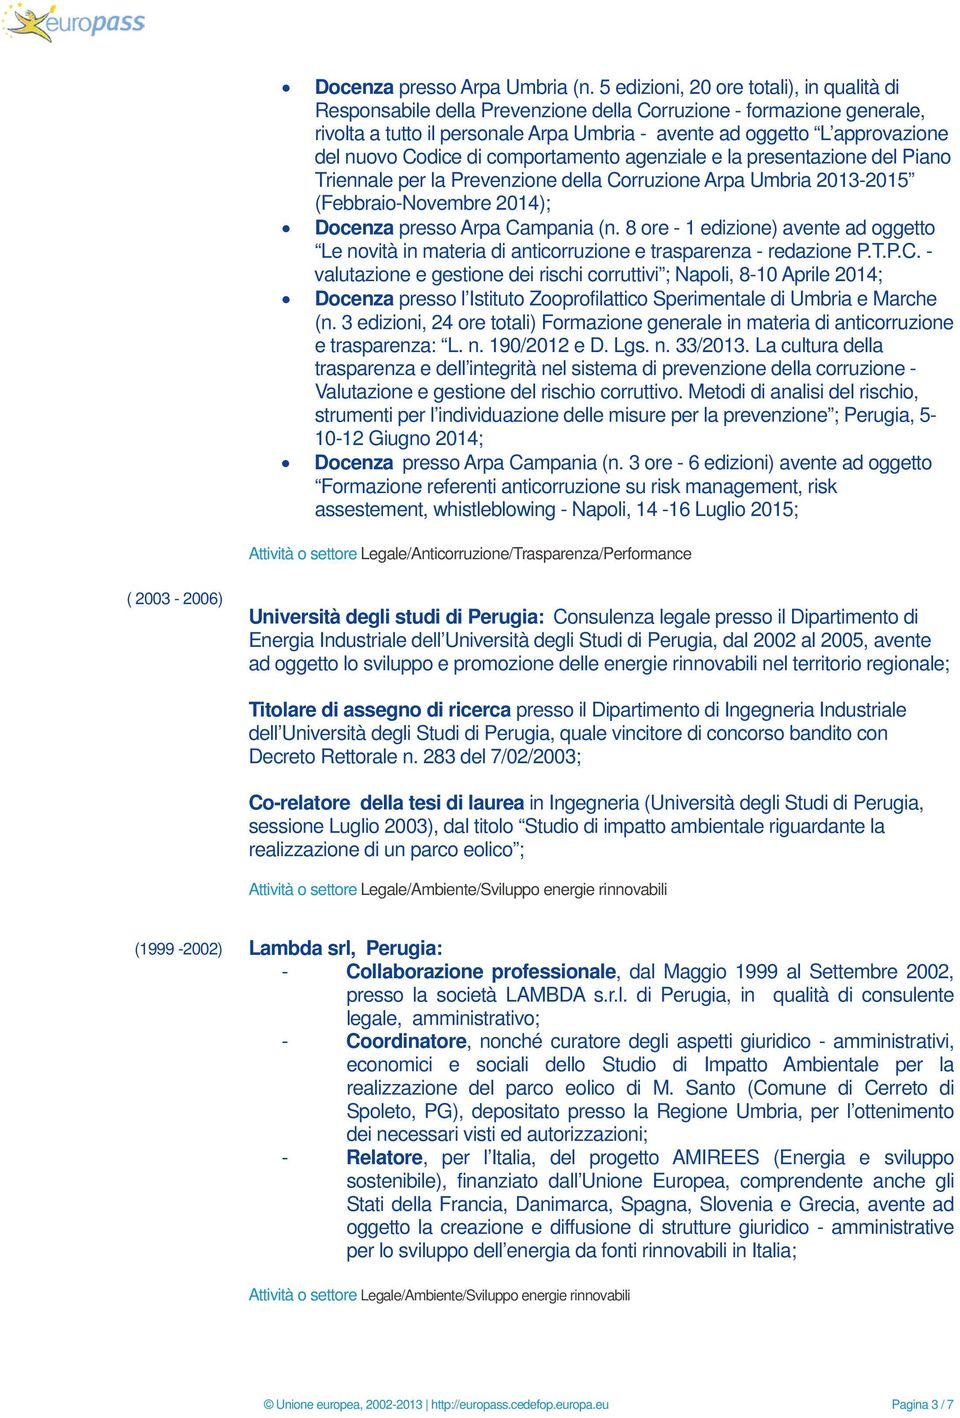 Codice di comportamento agenziale e la presentazione del Piano Triennale per la Prevenzione della Corruzione Arpa Umbria 2013-2015 (Febbraio-Novembre 2014); Docenza presso Arpa Campania (n.